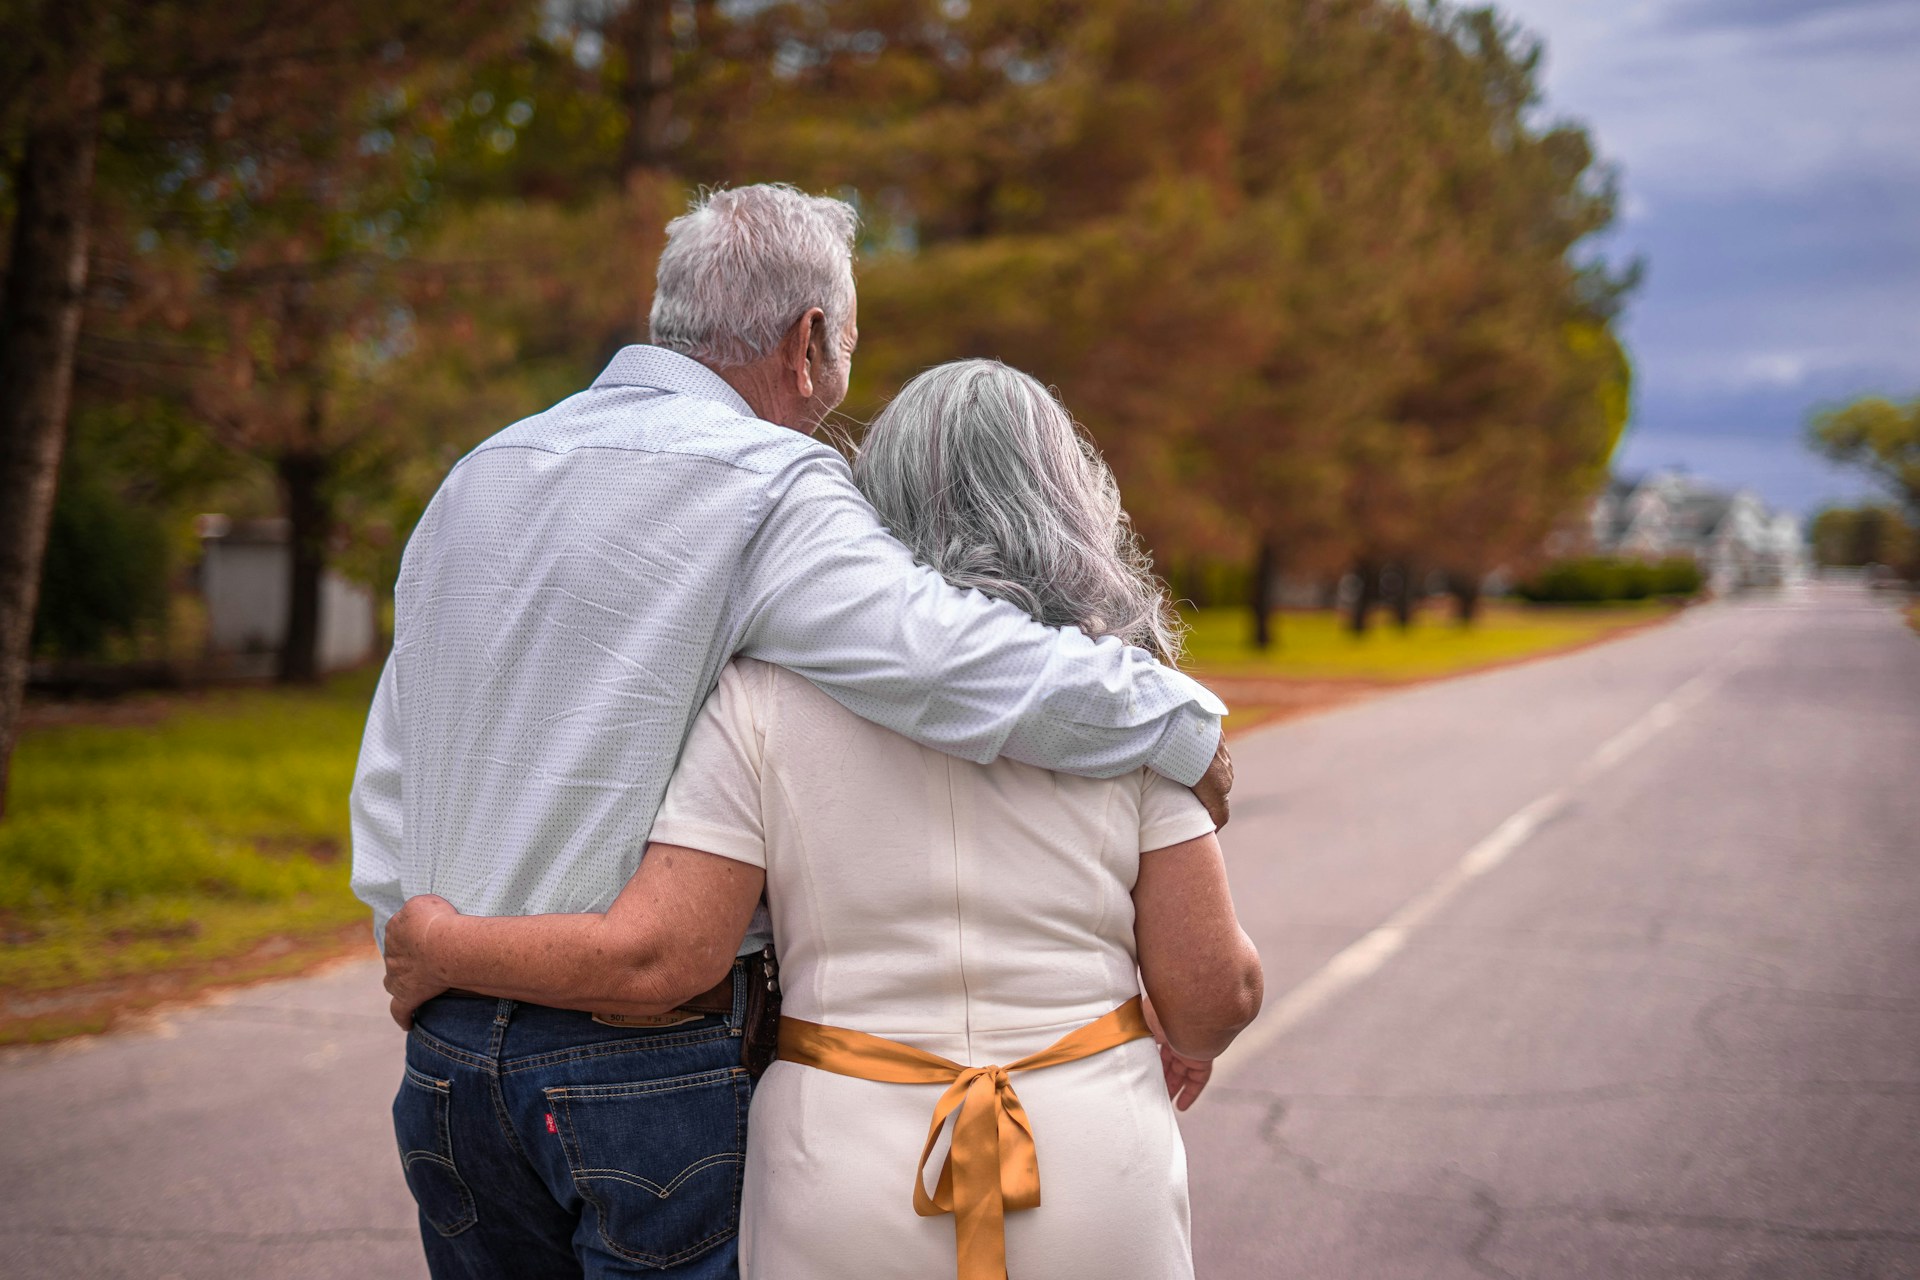 Analiza impactului speranței de viață asupra vârstei de pensionare